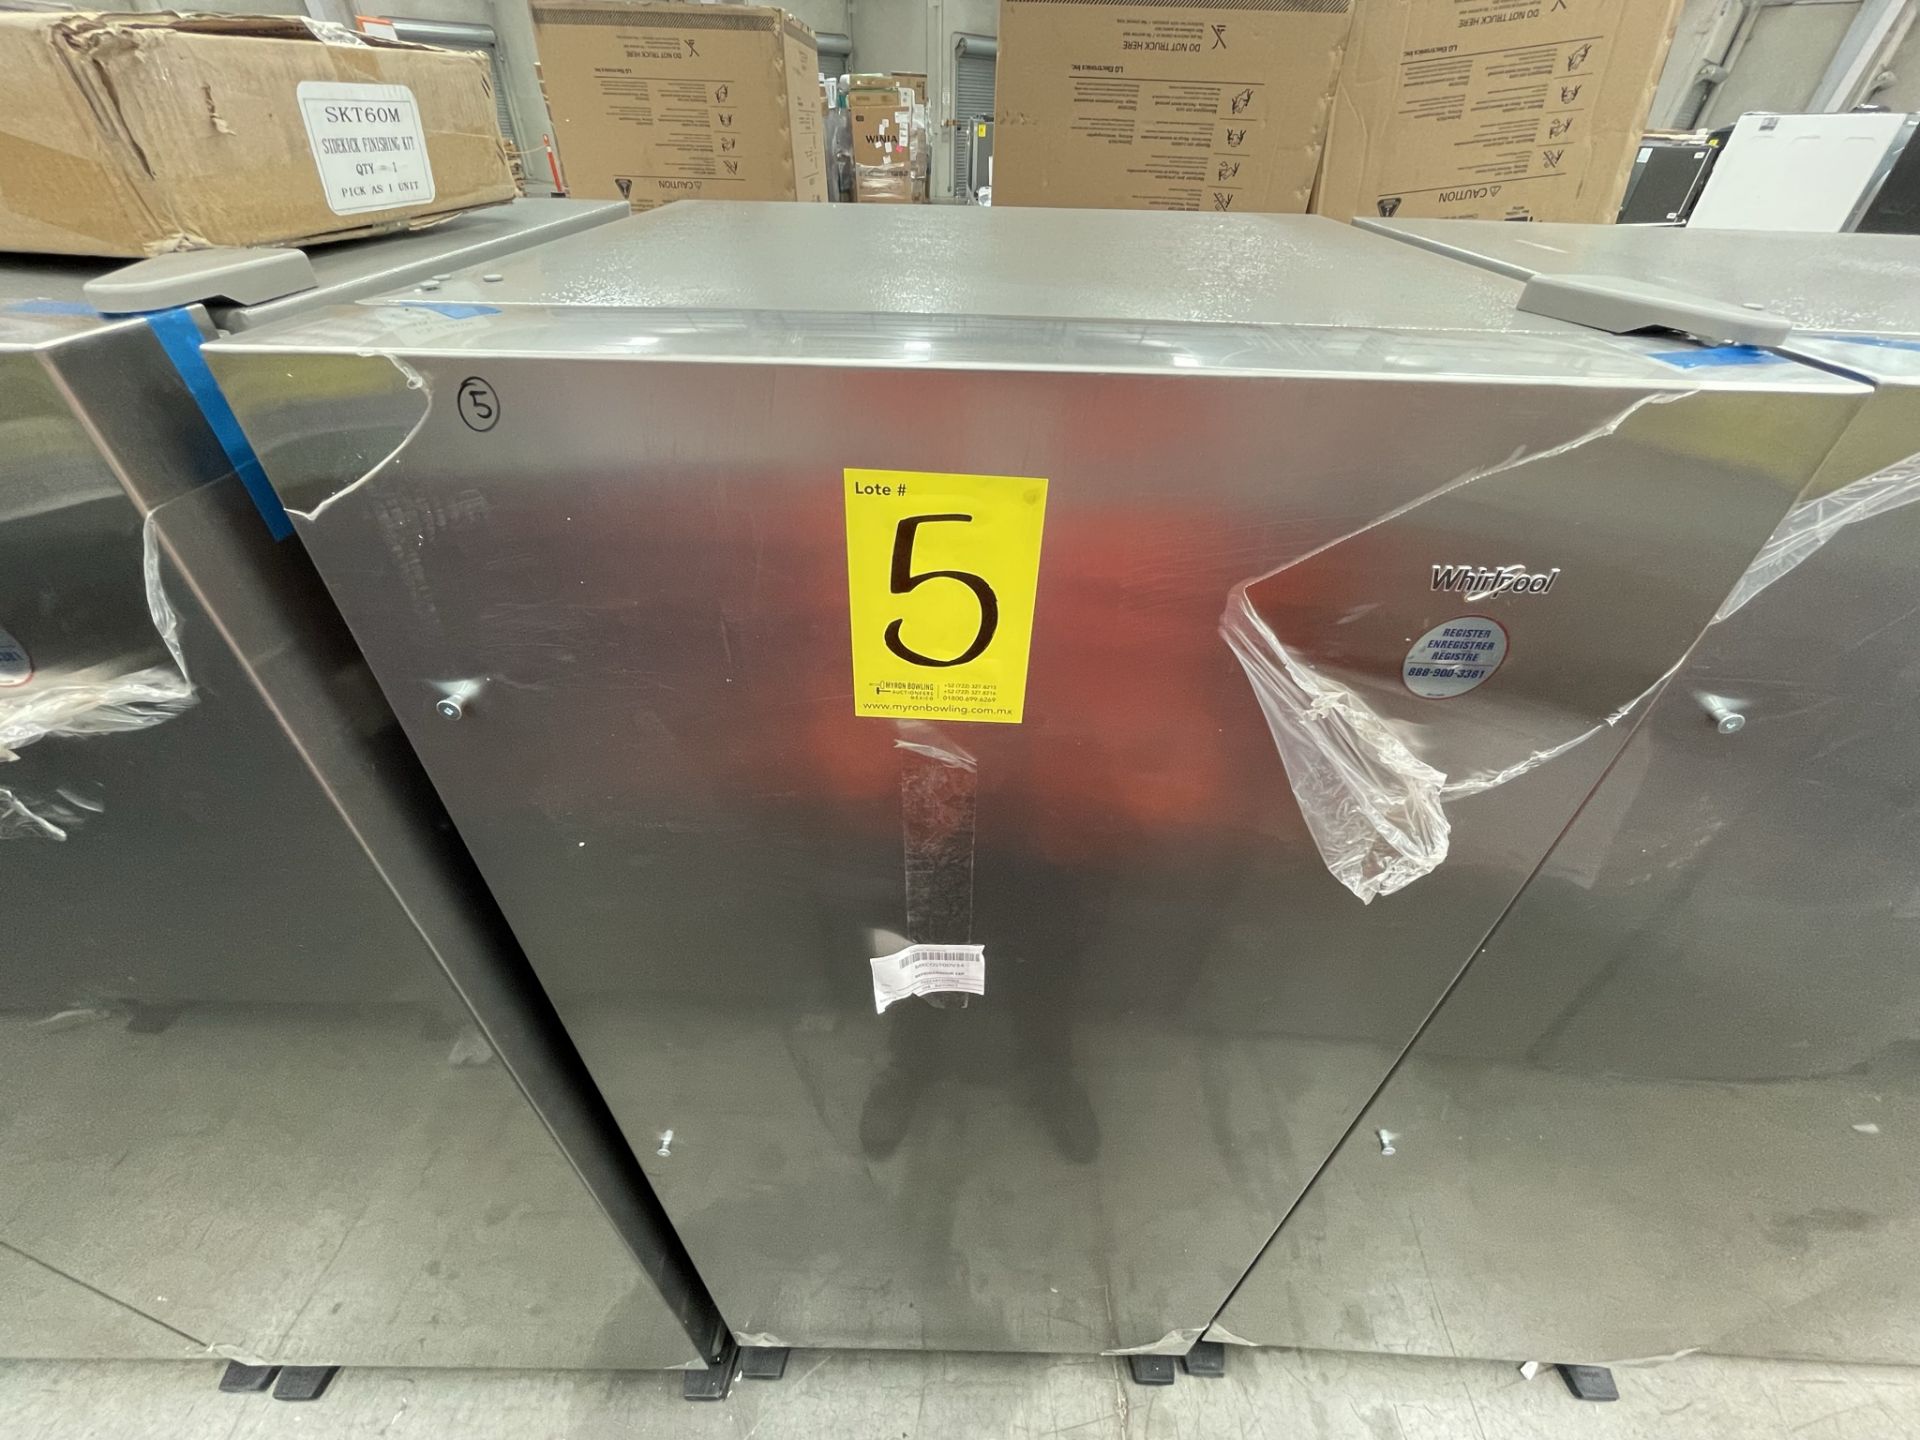 (EQUIPO NUEVO) 1 Refrigerador Marca WHIRLPOOL, Modelo WSR57R18DM, Serie 905375, Color GRIS, (Nuevo,